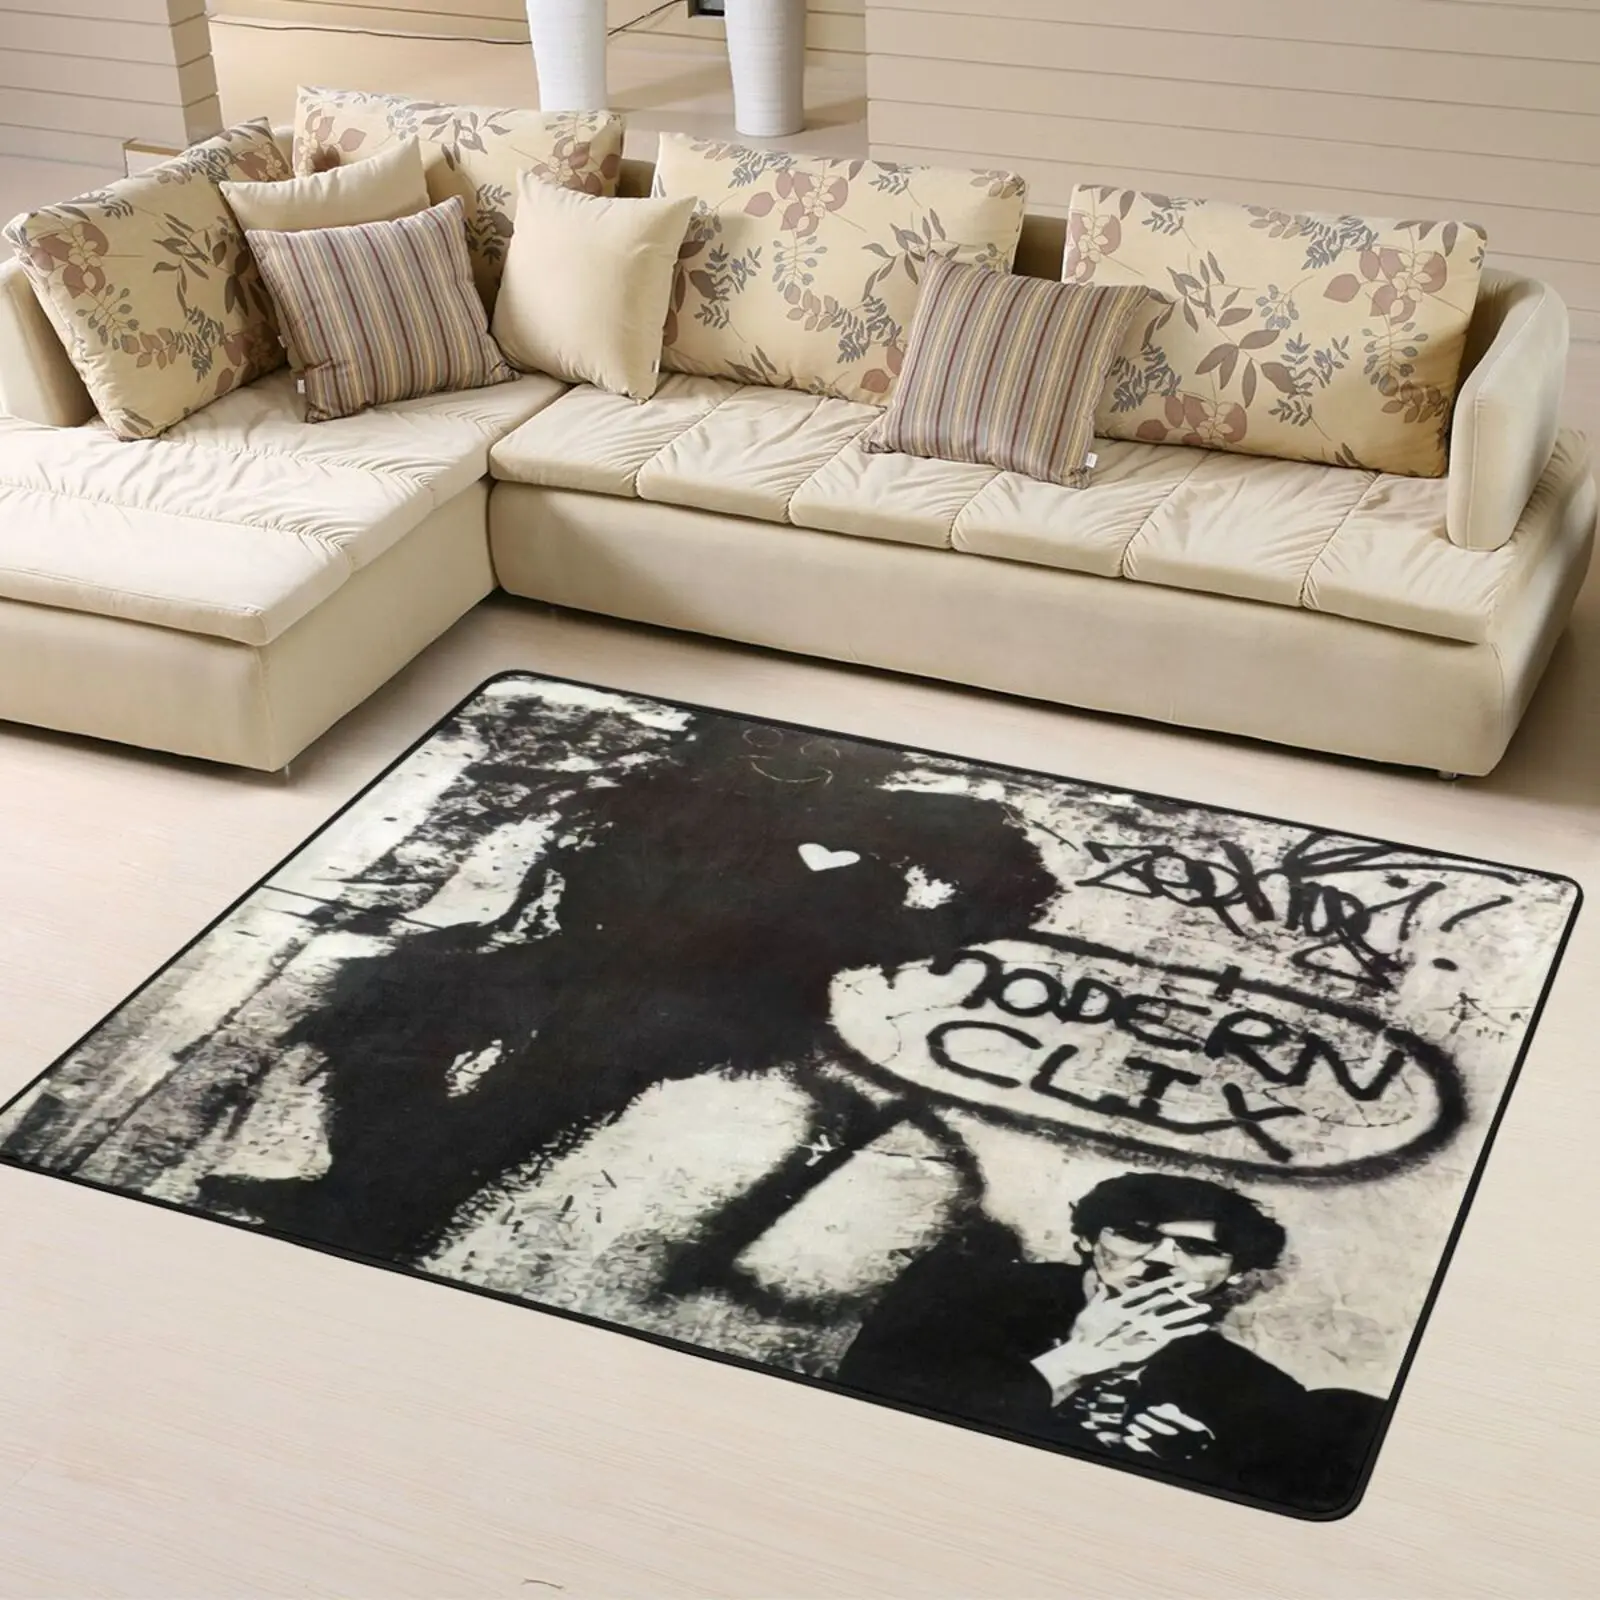 

Виниловый коврик для детской комнаты Charly Garcia клик, современный коврик из полиэстера с рисунком ног, длинный ковер 4Xl для кофейных столов, муж...